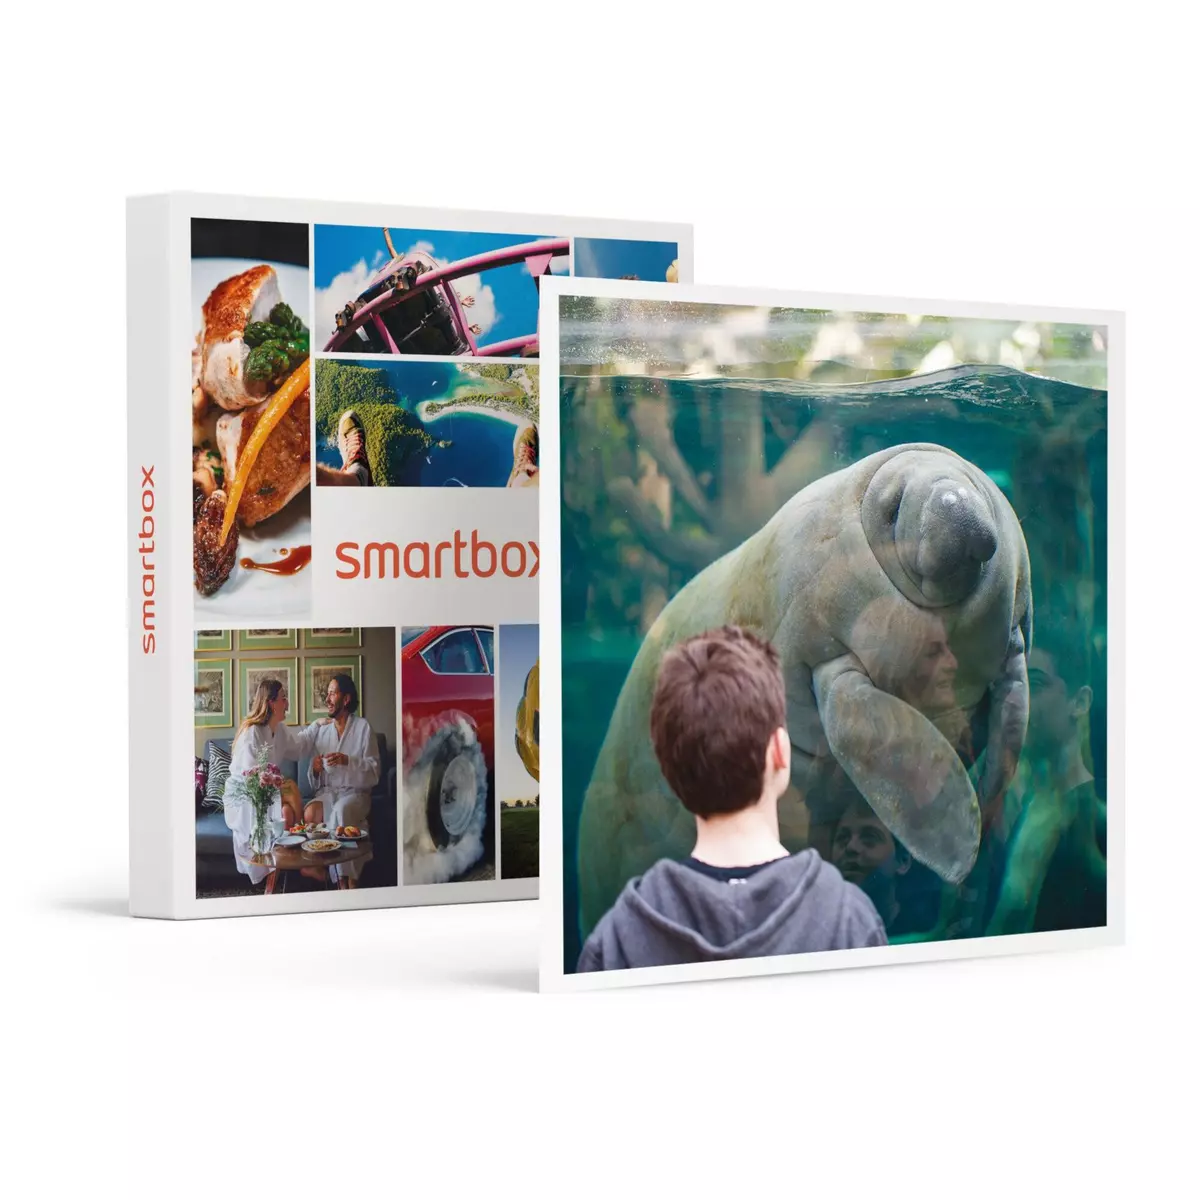 Smartbox Activité en famille : entrée pour 2 adultes et 2 enfants au Parc Zoologique de Paris - Coffret Cadeau Sport & Aventure